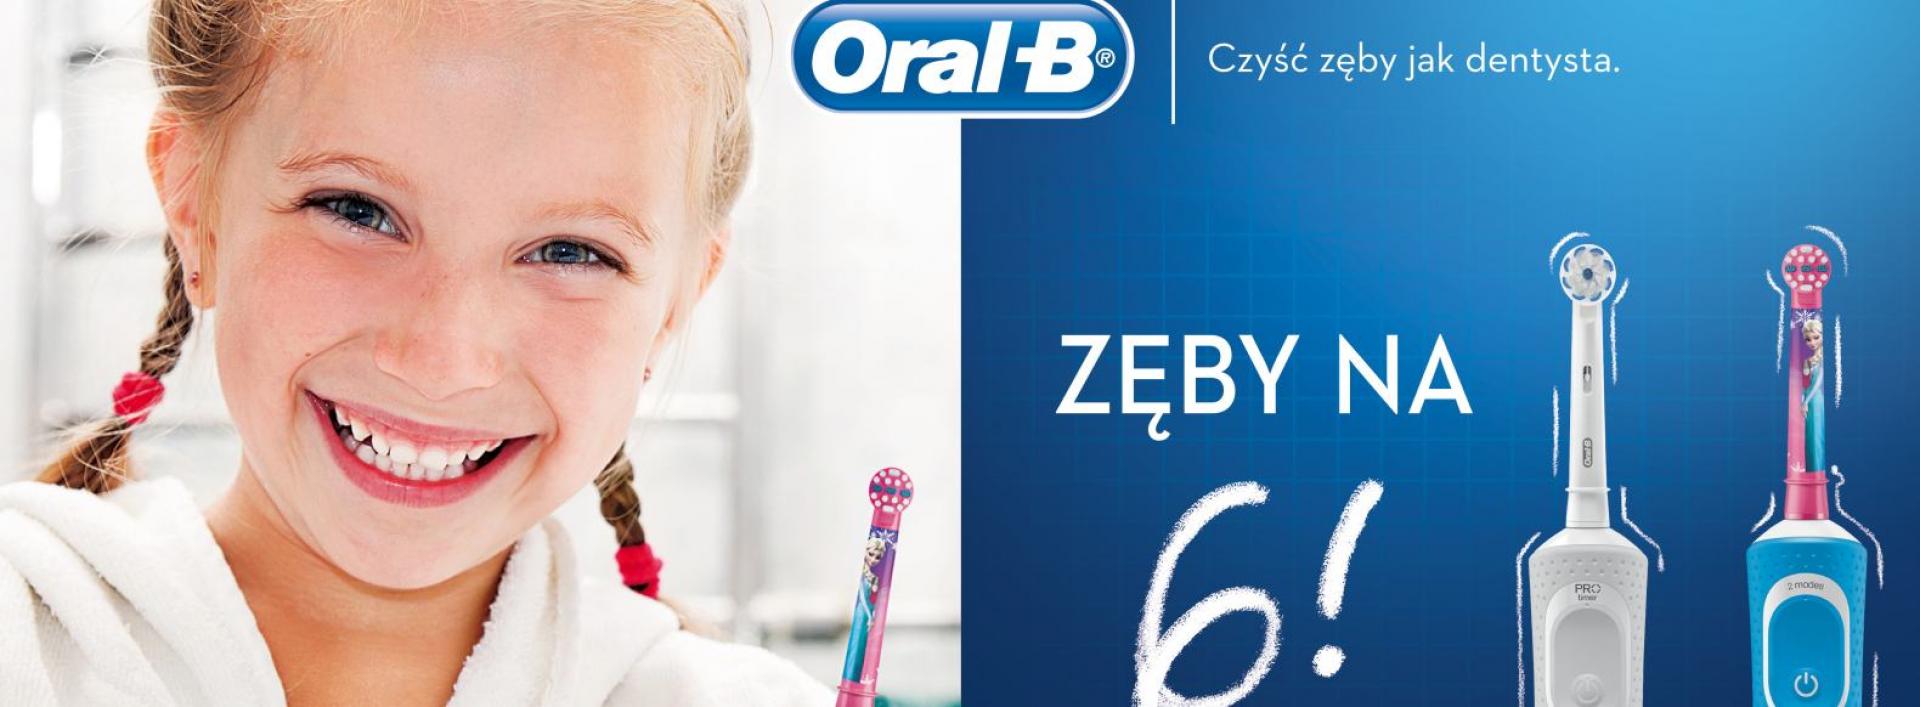 Kiepski stan zębów polskich dzieci - Oral-B przedstawia raport